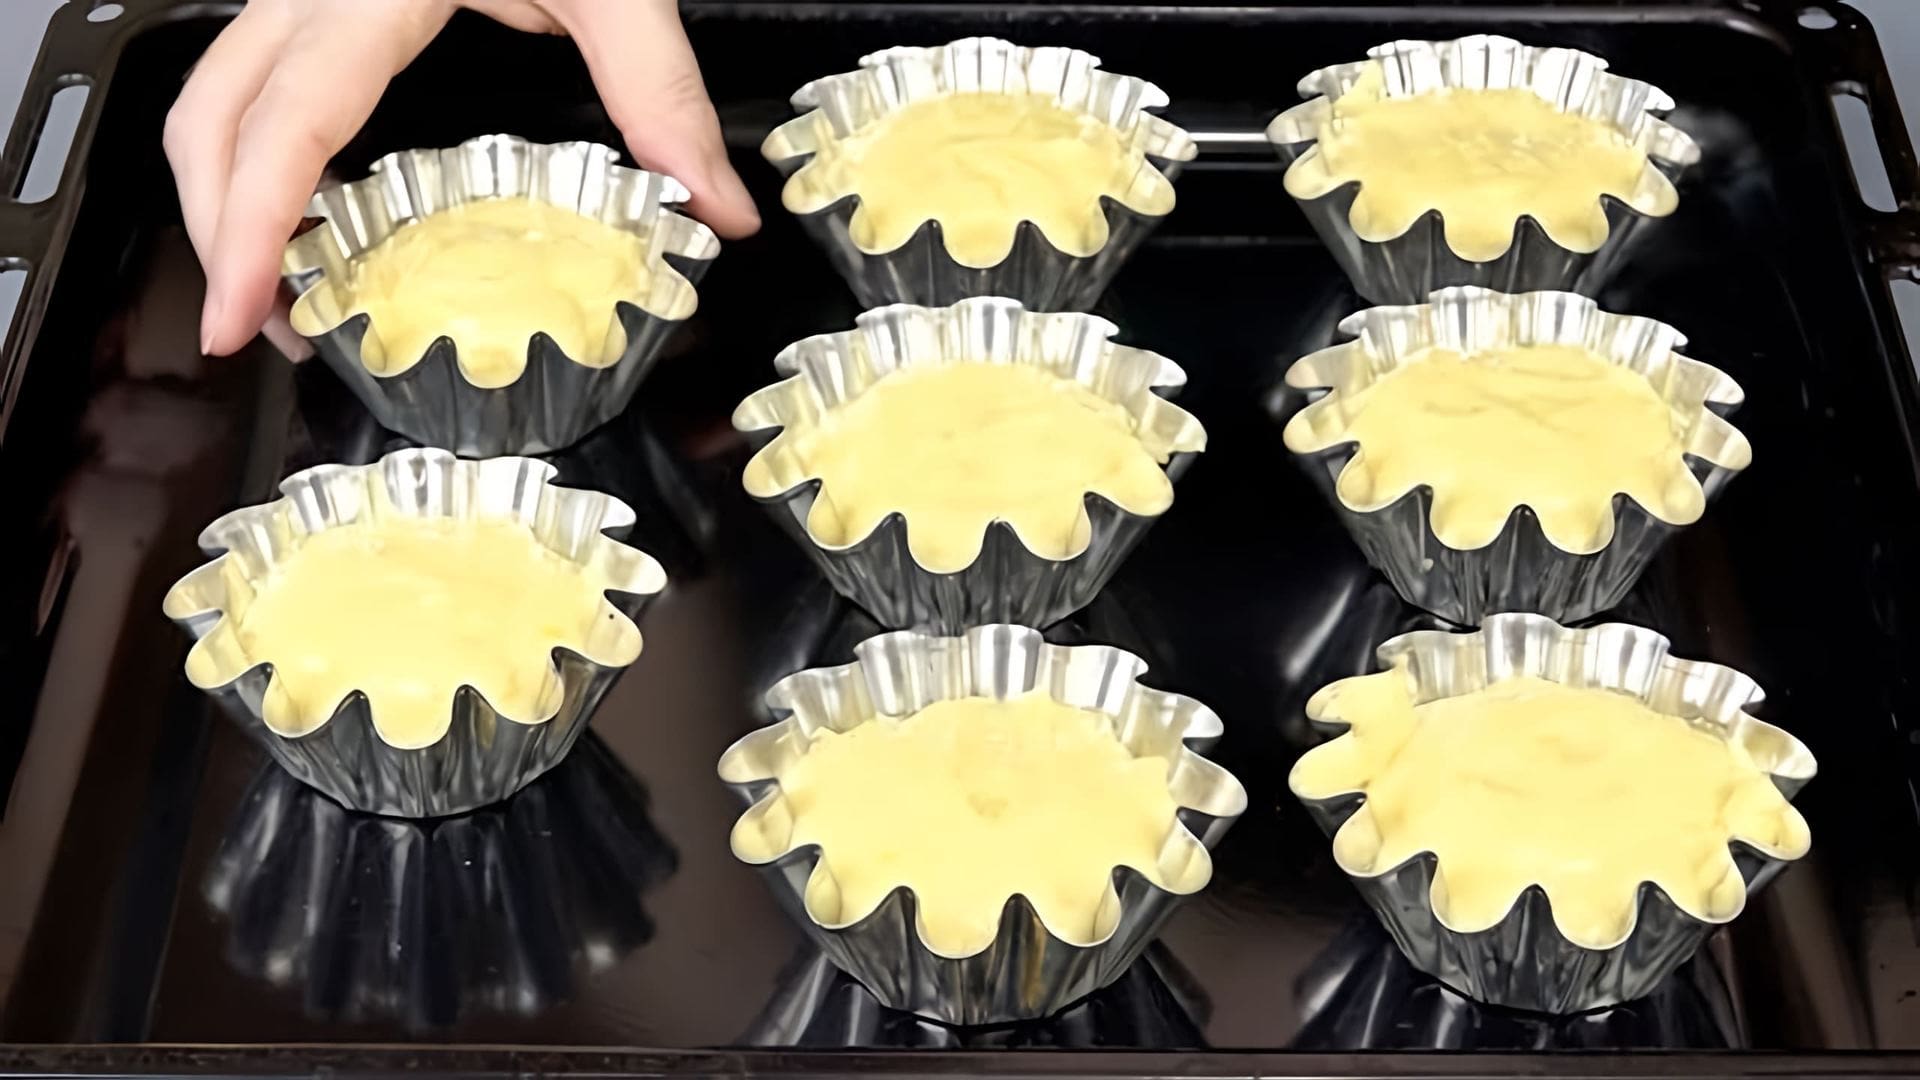 В этом видео автор делится рецептами трех новогодних десертов: торта, мандариновых кексов и пирожного из лимона и апельсина